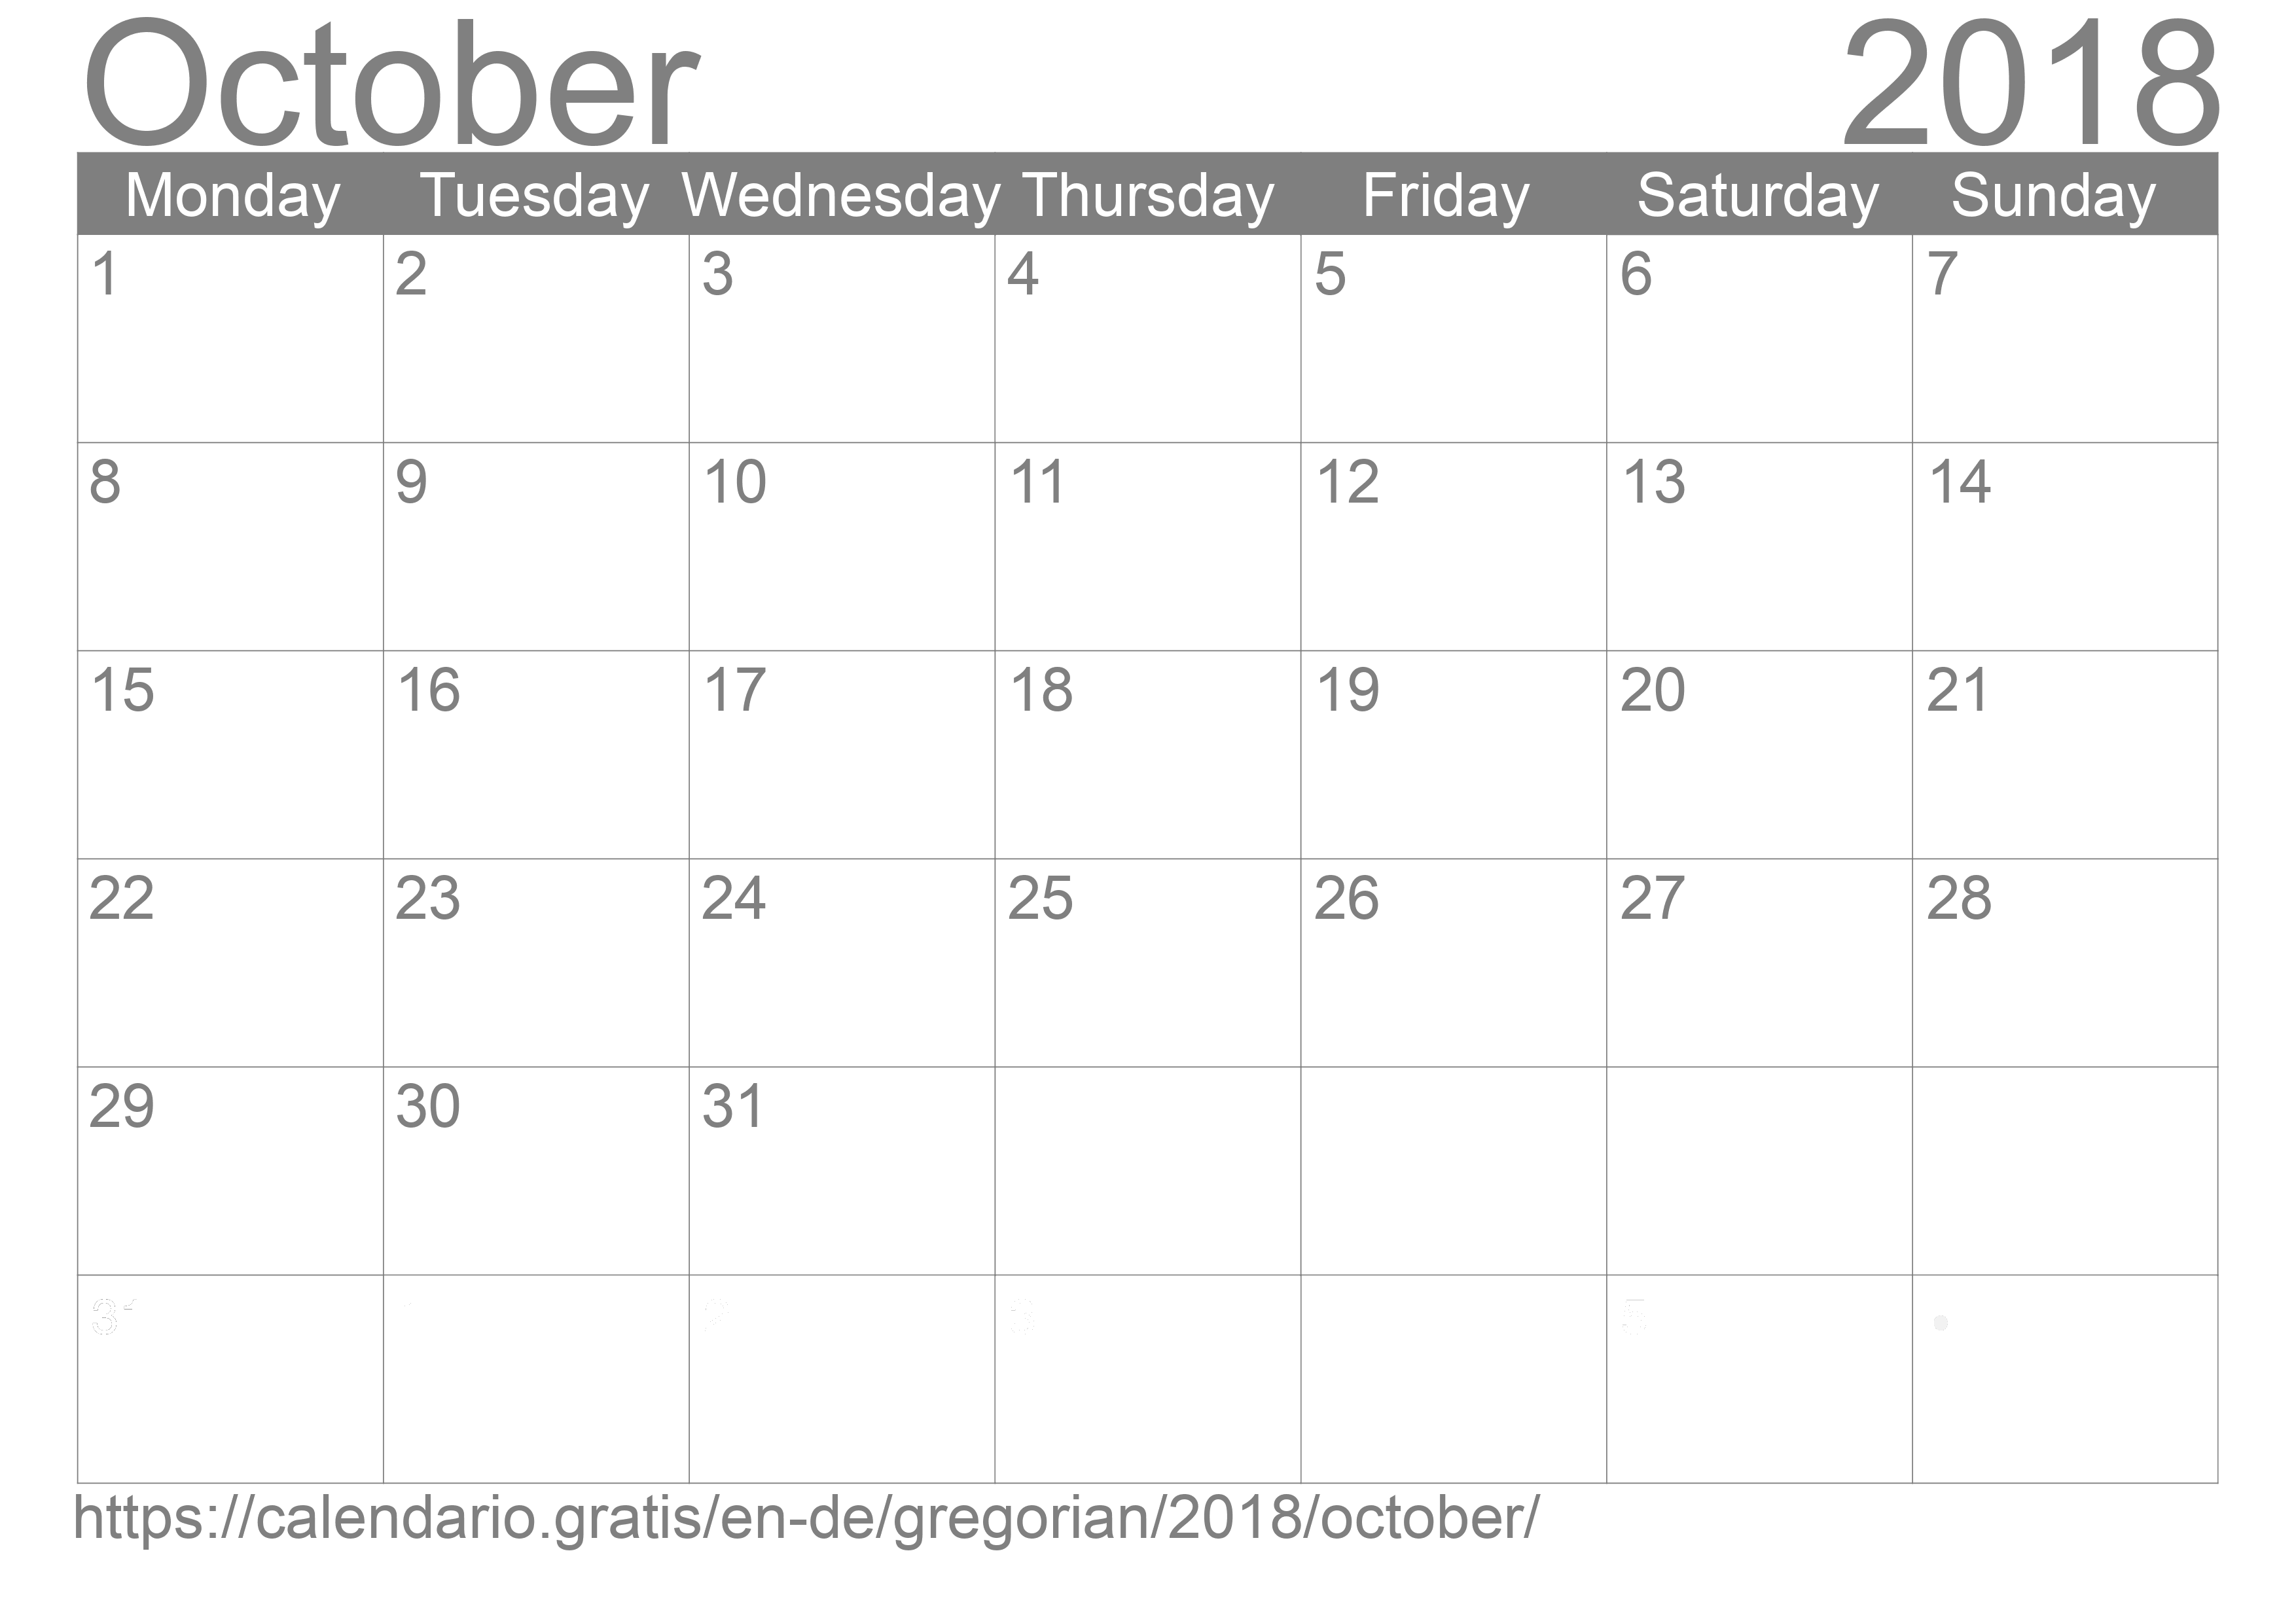 Calendar October 2018 to print